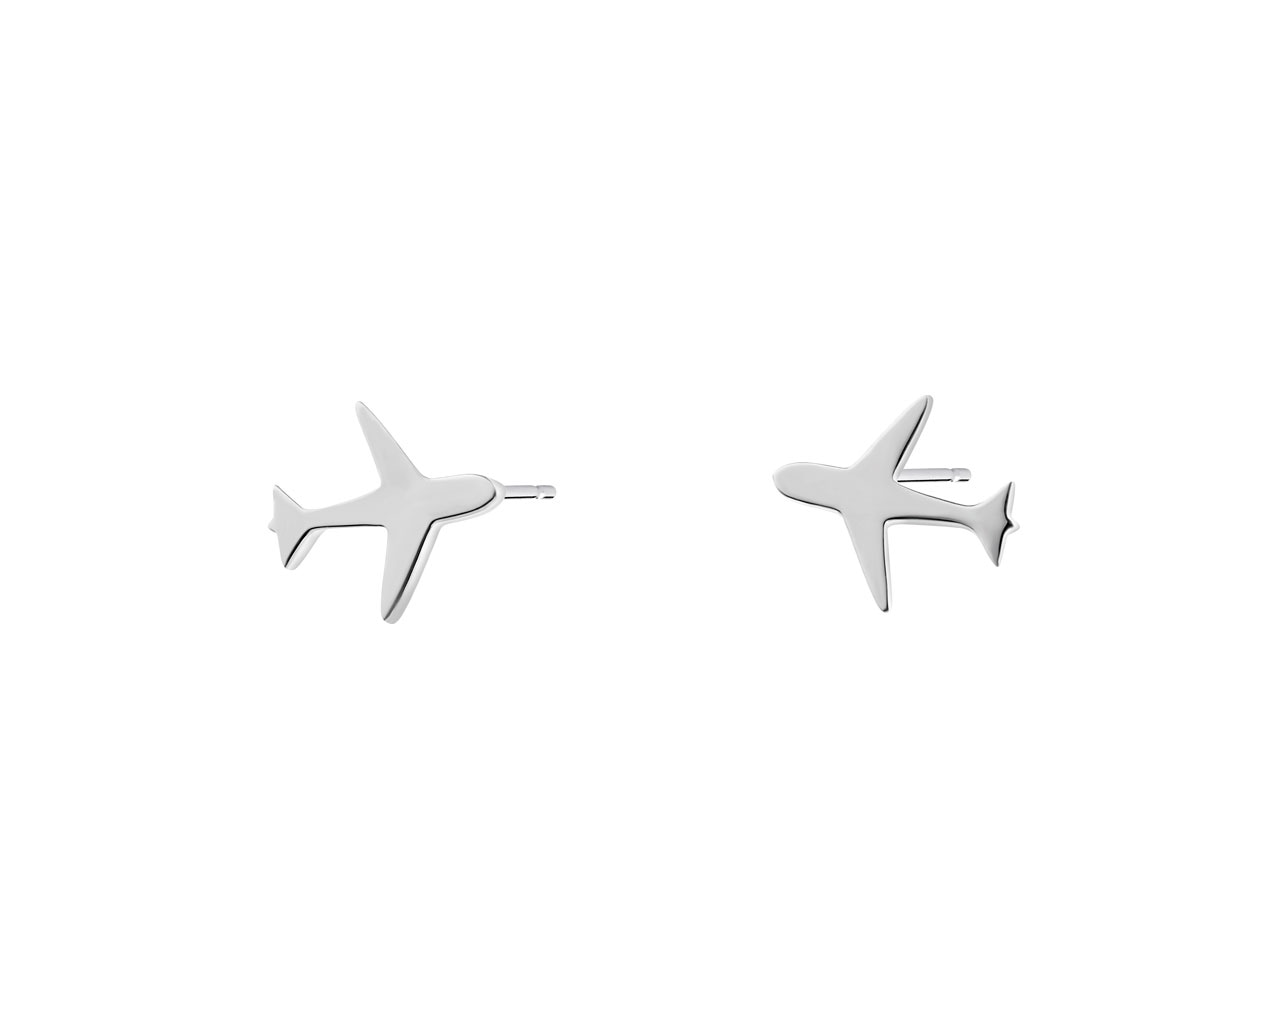 Kolczyki srebrne - samoloty